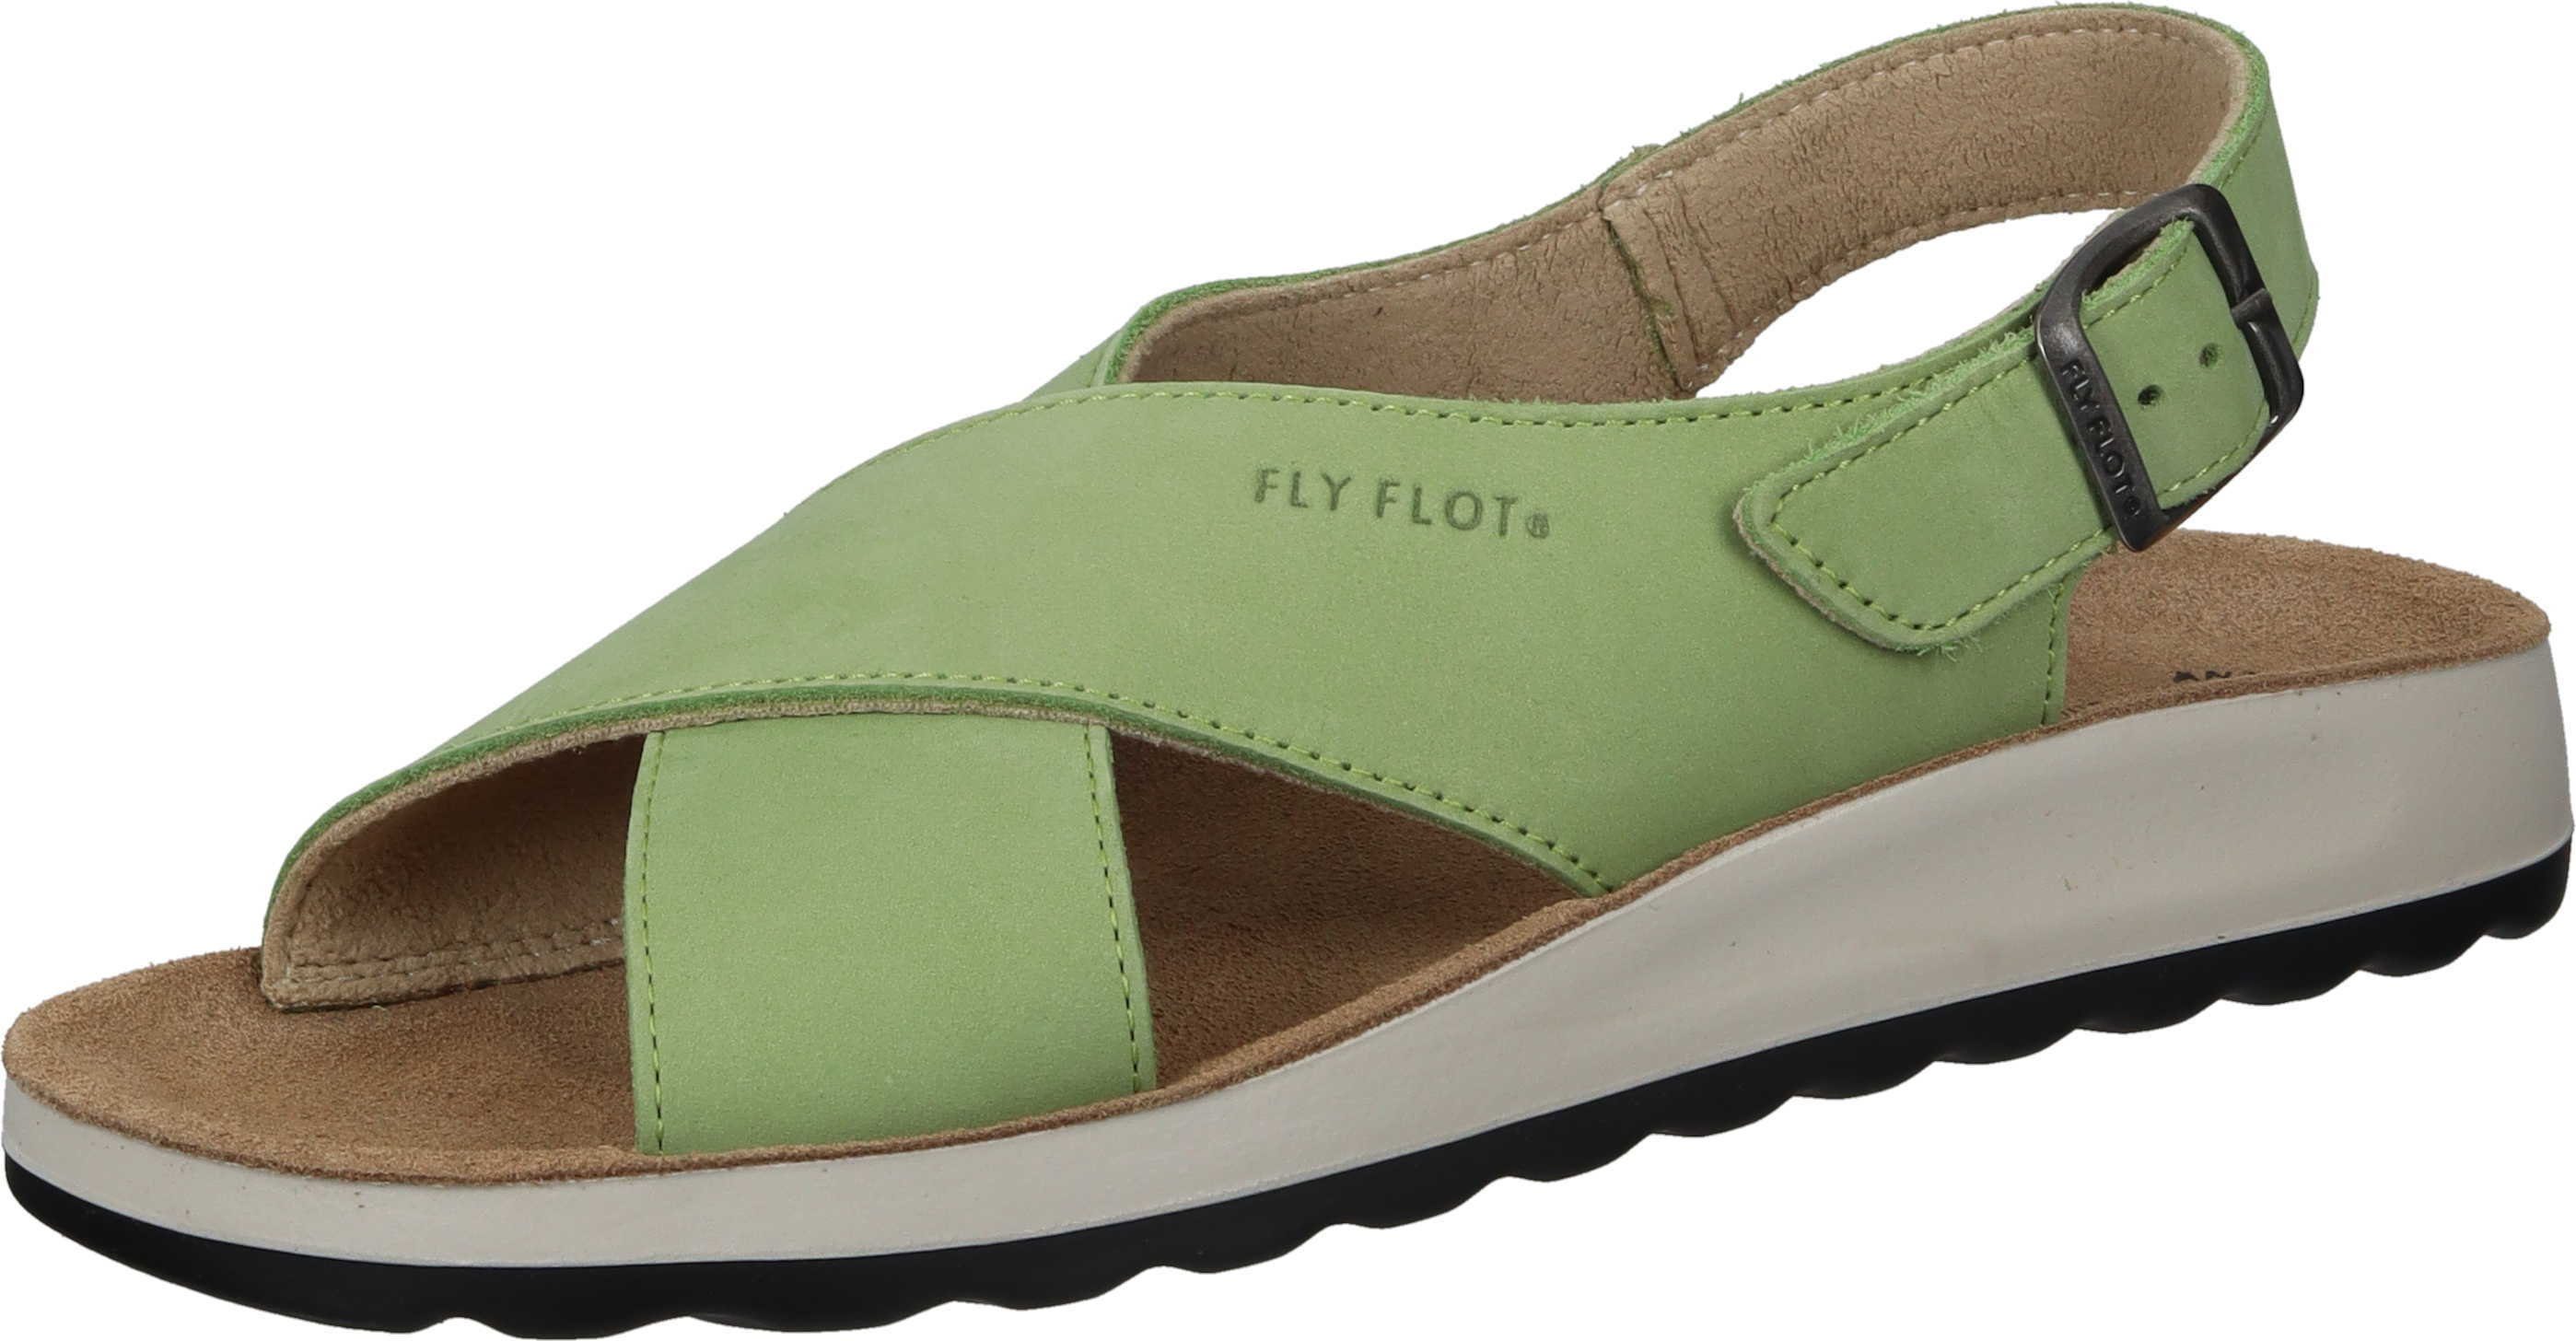 Fly Flot Sandaletten Nubukleder grün aus Sandalette